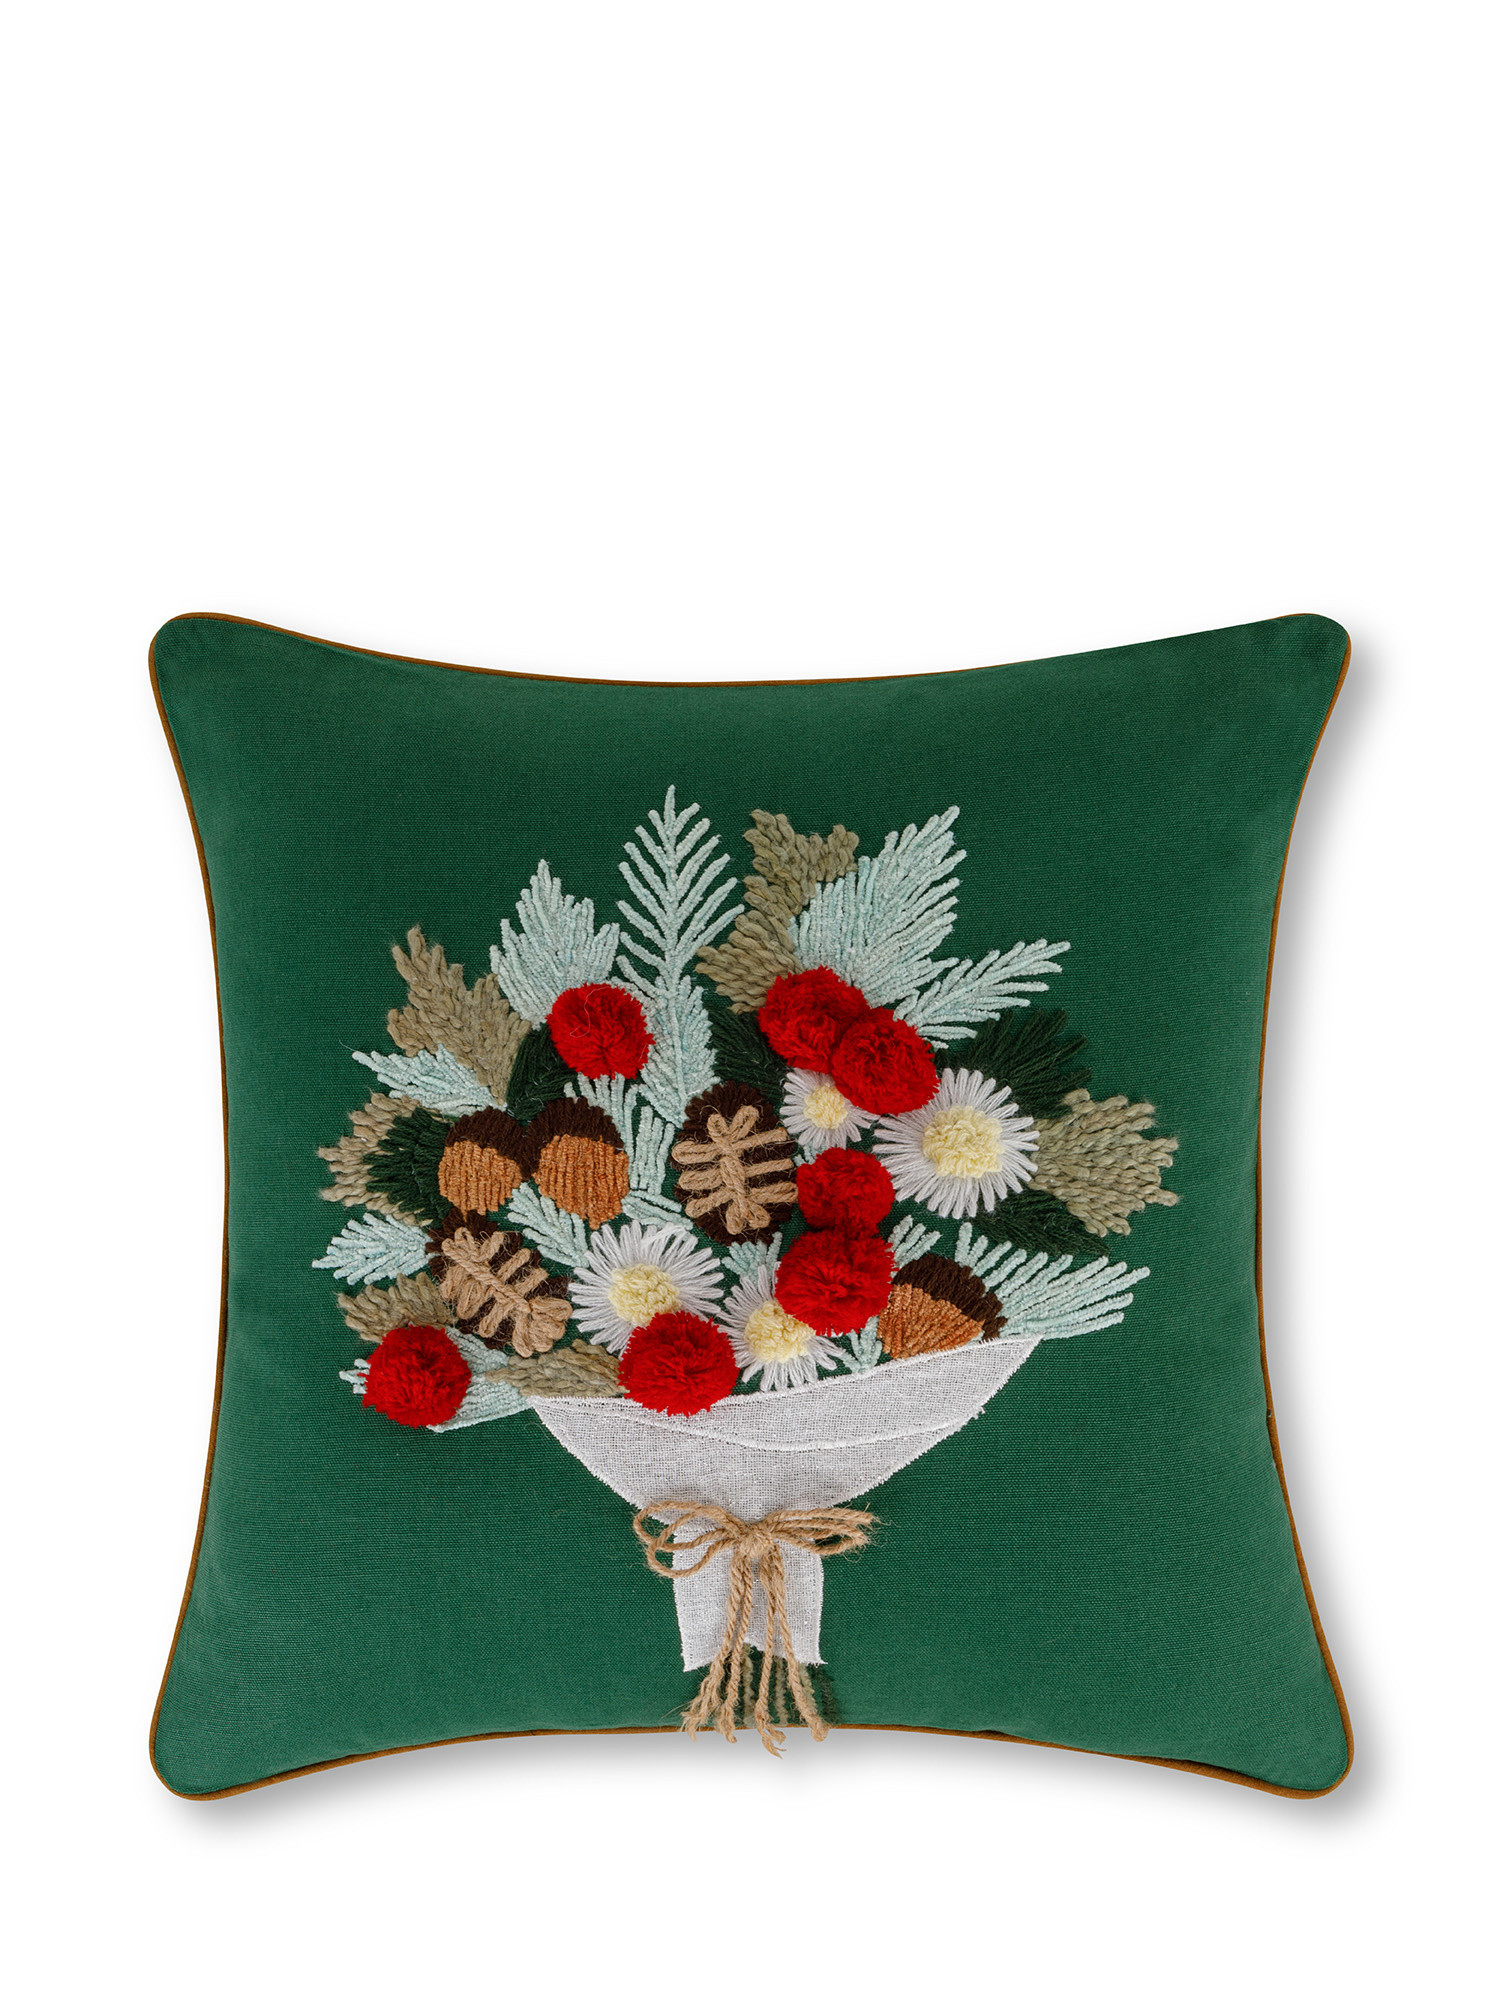 Cuscino ricamato bouquet natalizio 45x45 cm, Multicolor, large image number 0